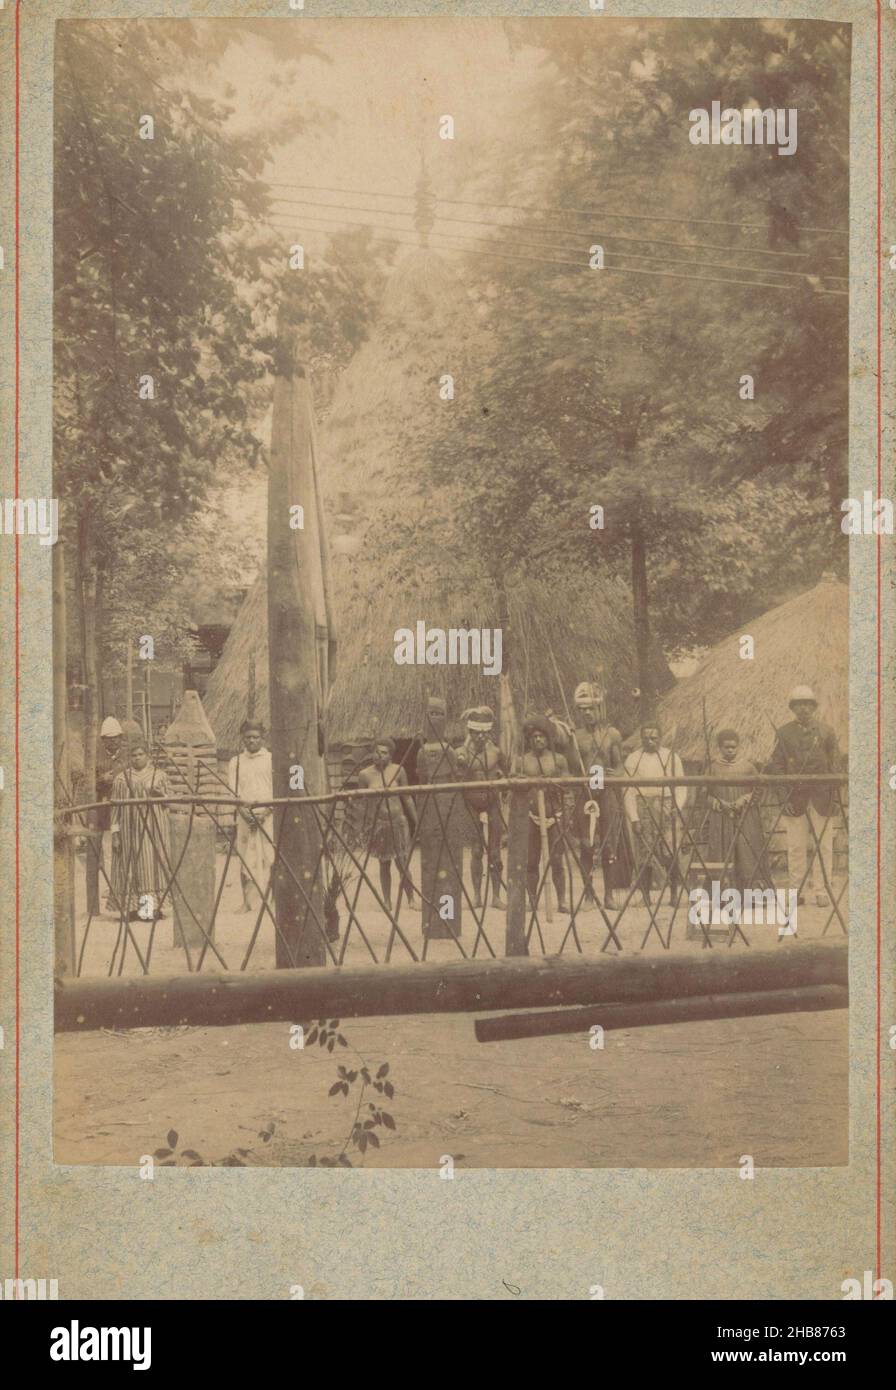 Vista di alcune capanne con un gruppo di persone, anonimo, Afrika, 1850 - 1900, cartone, stampa albume, altezza 164 mm x larghezza 108 mm Foto Stock